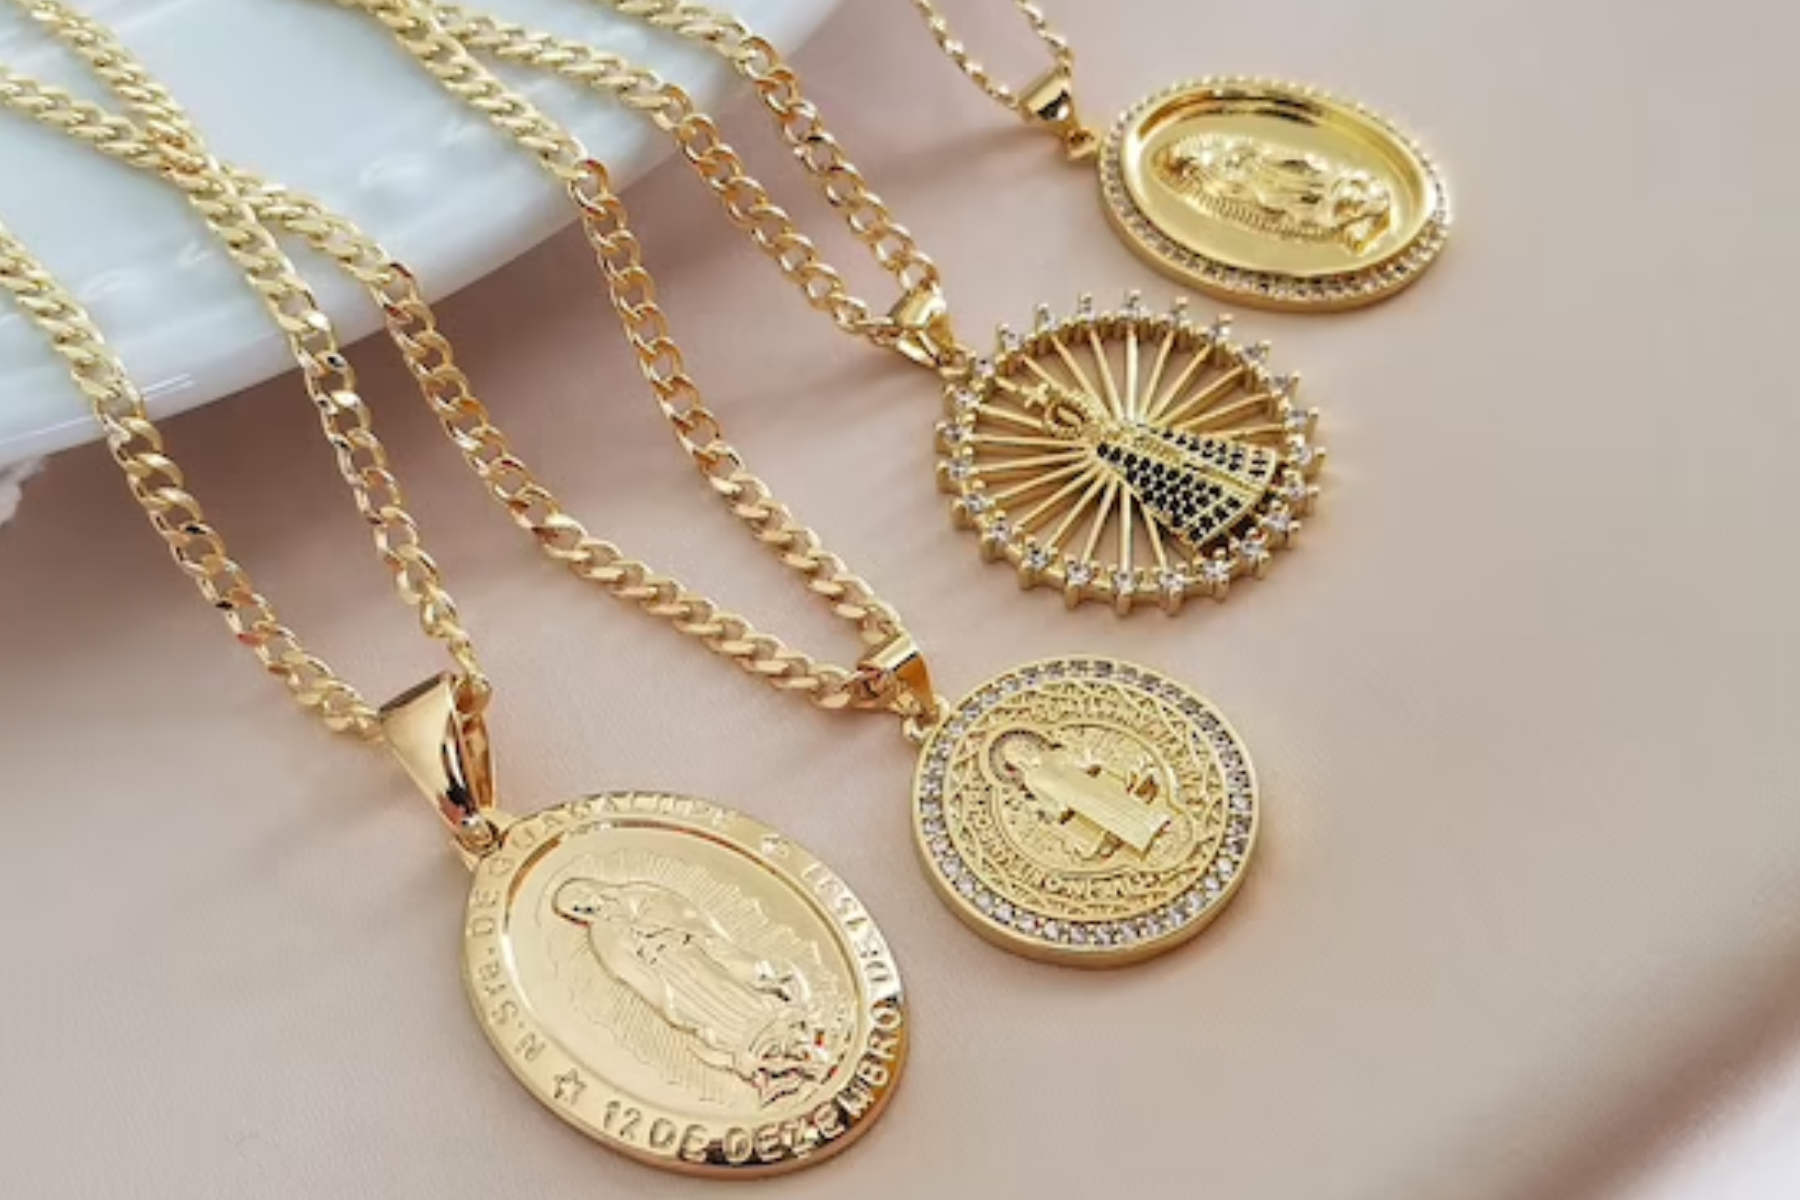 Four distinct varieties of gold pendant necklaces